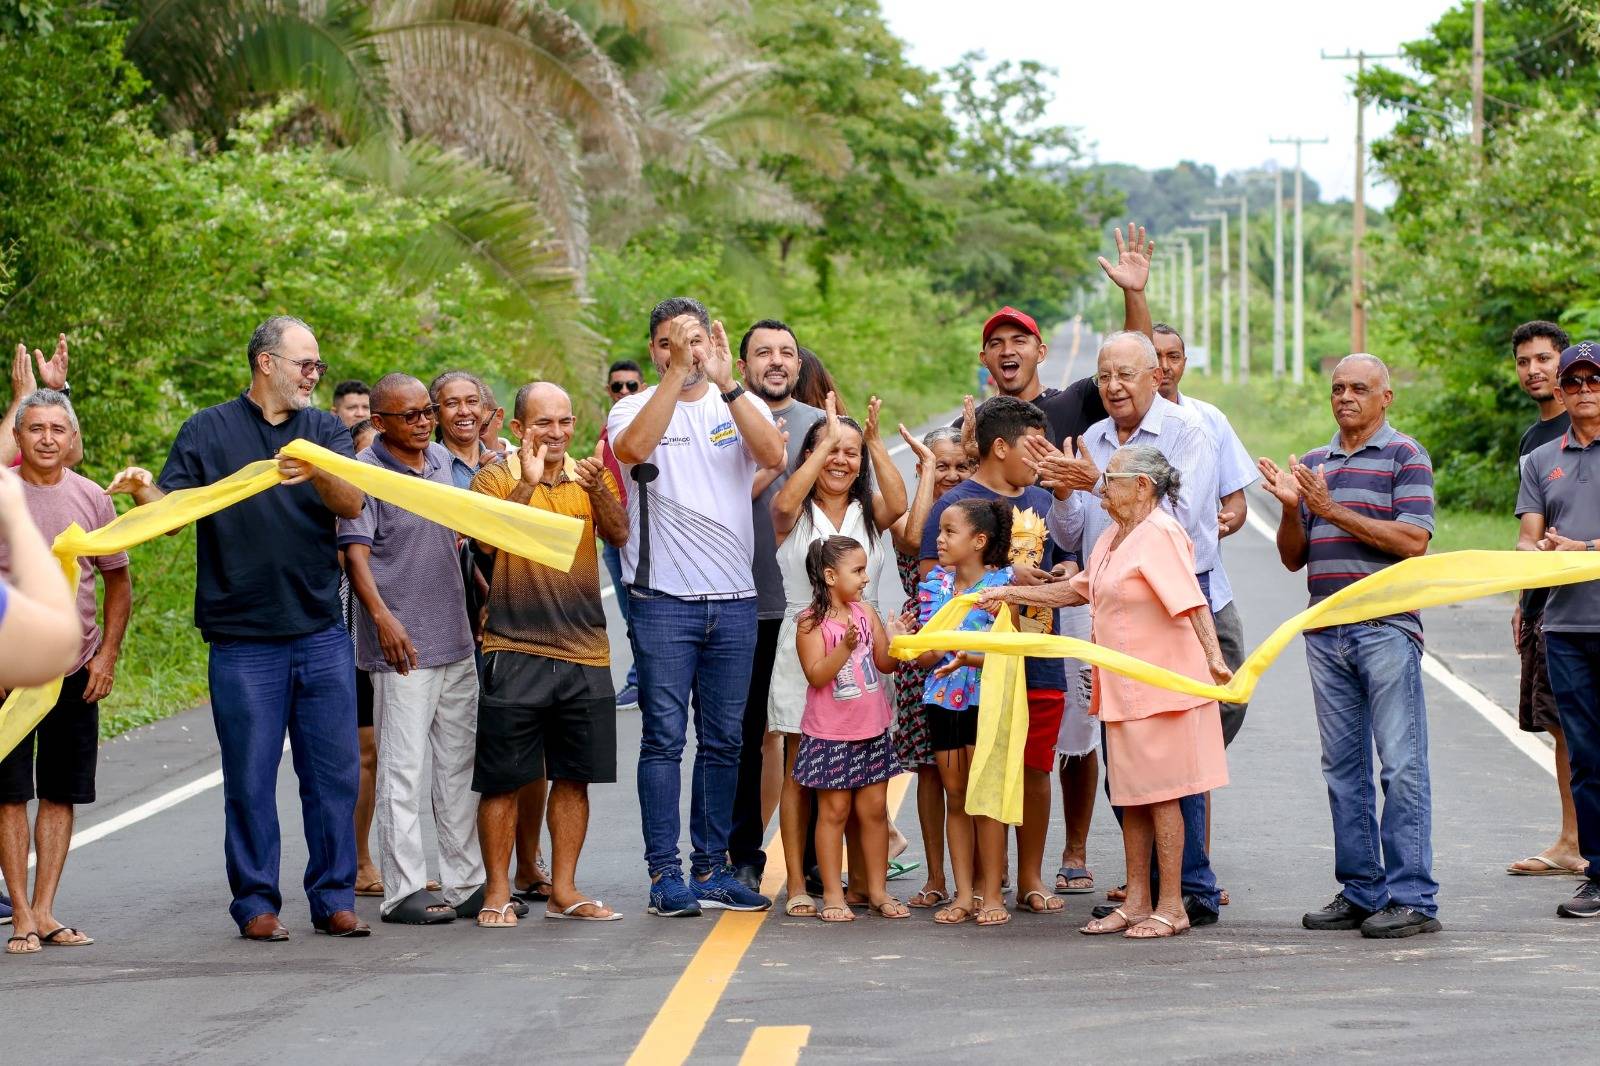 Prefeitura de Teresina inaugura pavimentação asfáltica da TER 335 no Povoado Amparo